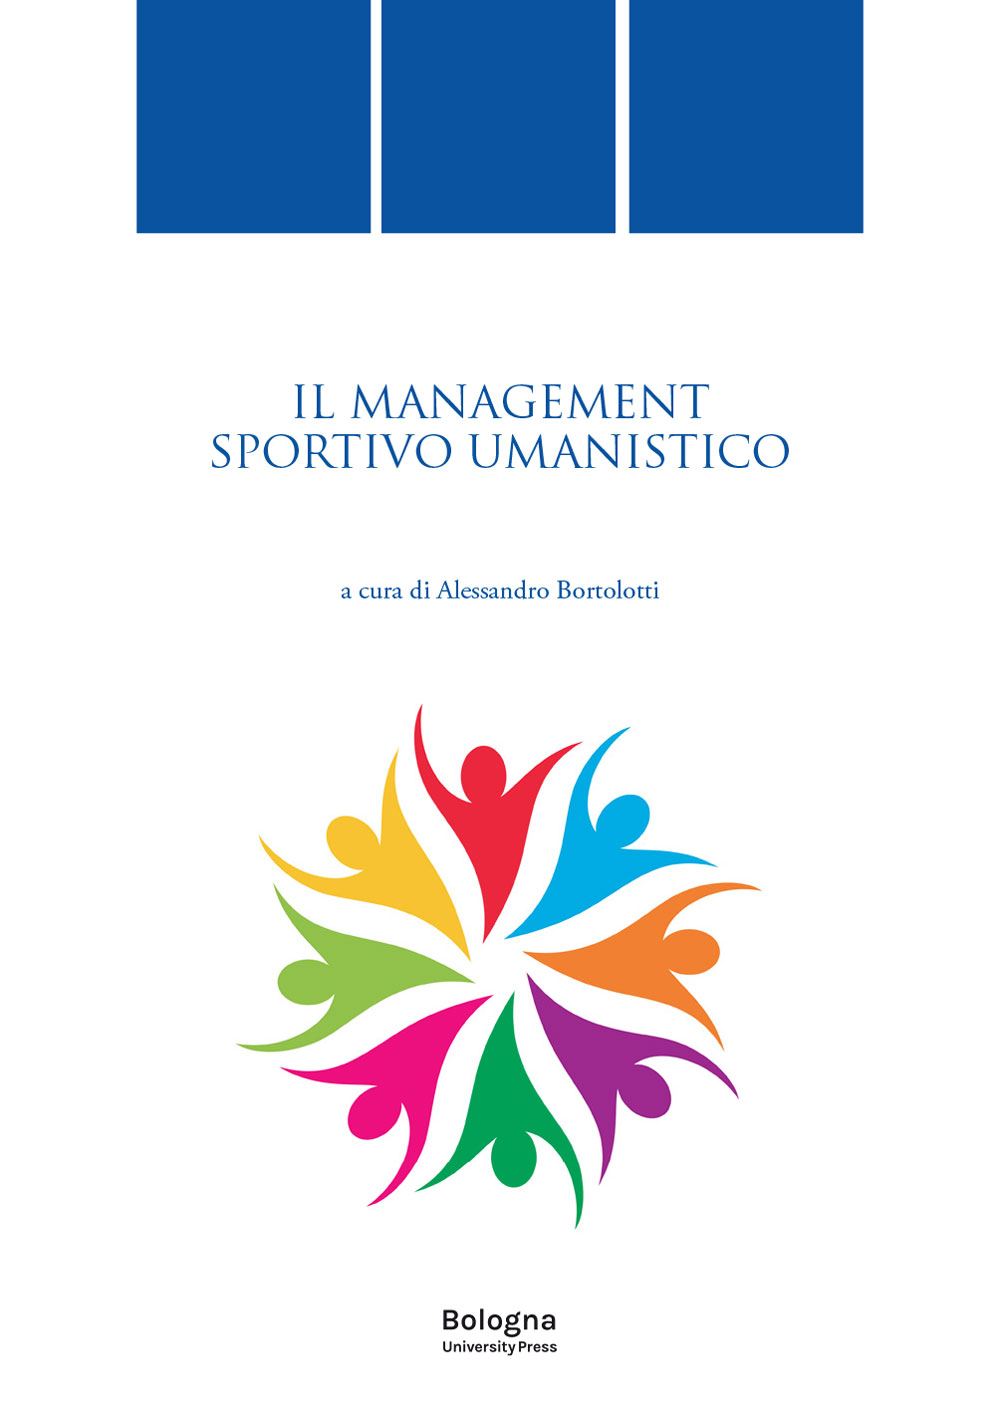 IL MANAGEMENT SPORTIVO UMANISTICO - Bologna University Press